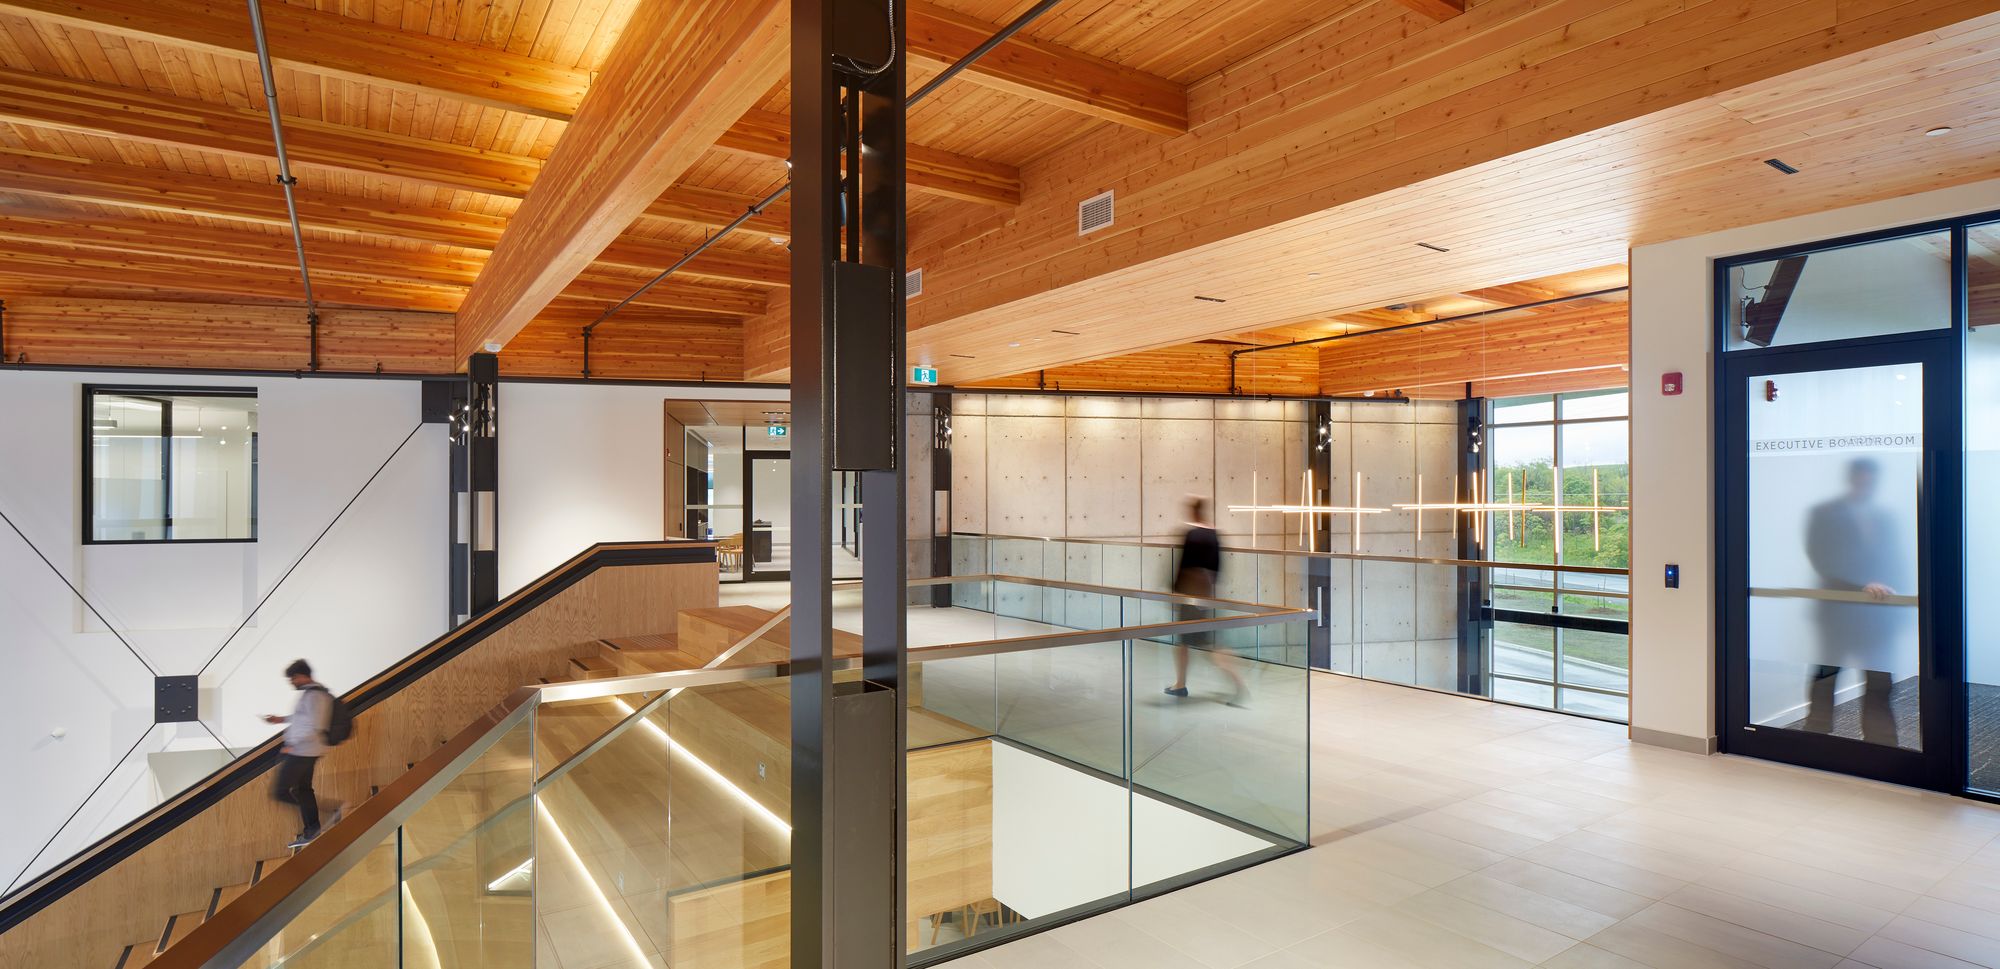 图片[9]|Caivan办公室-渥太华|ART-Arrakis | 建筑室内设计的创新与灵感